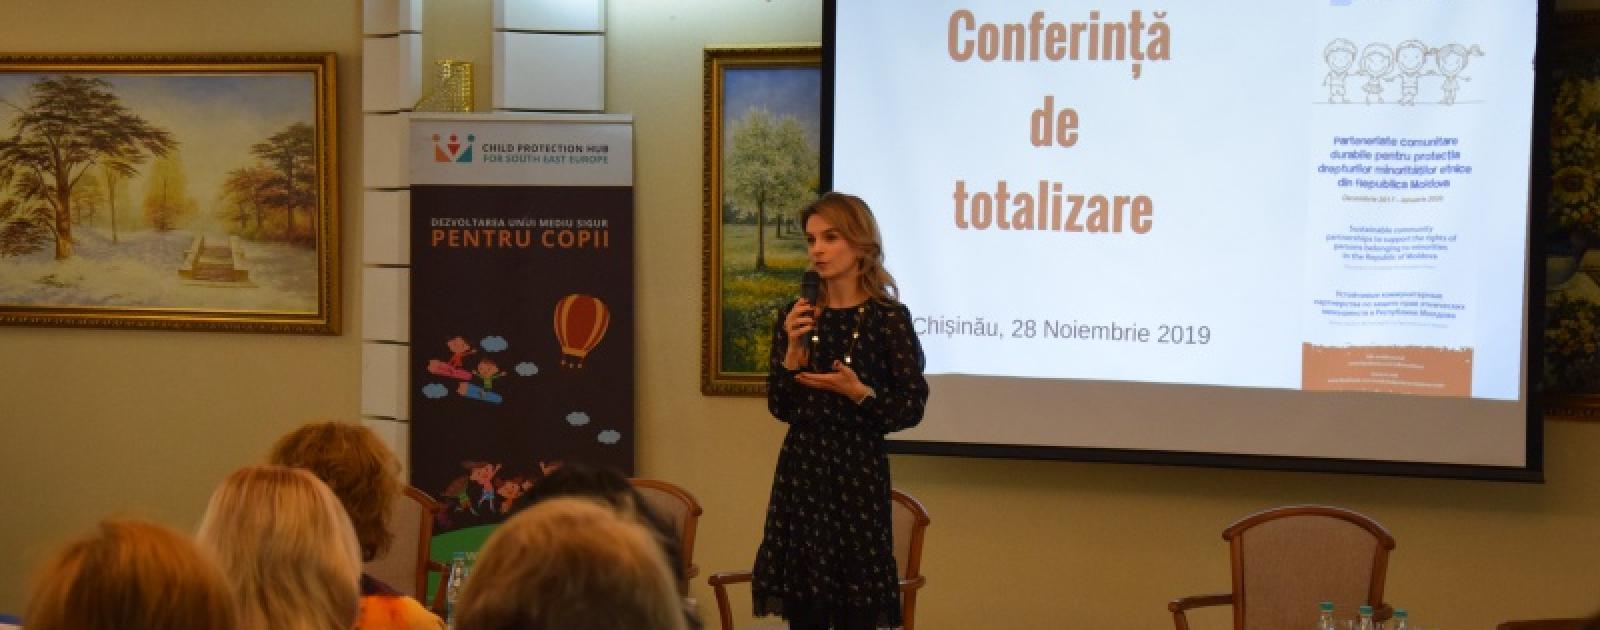 Conferință de totalizare a proiectului privind protecția drepturilor minorităților etnice, realizat de Tdh Moldova